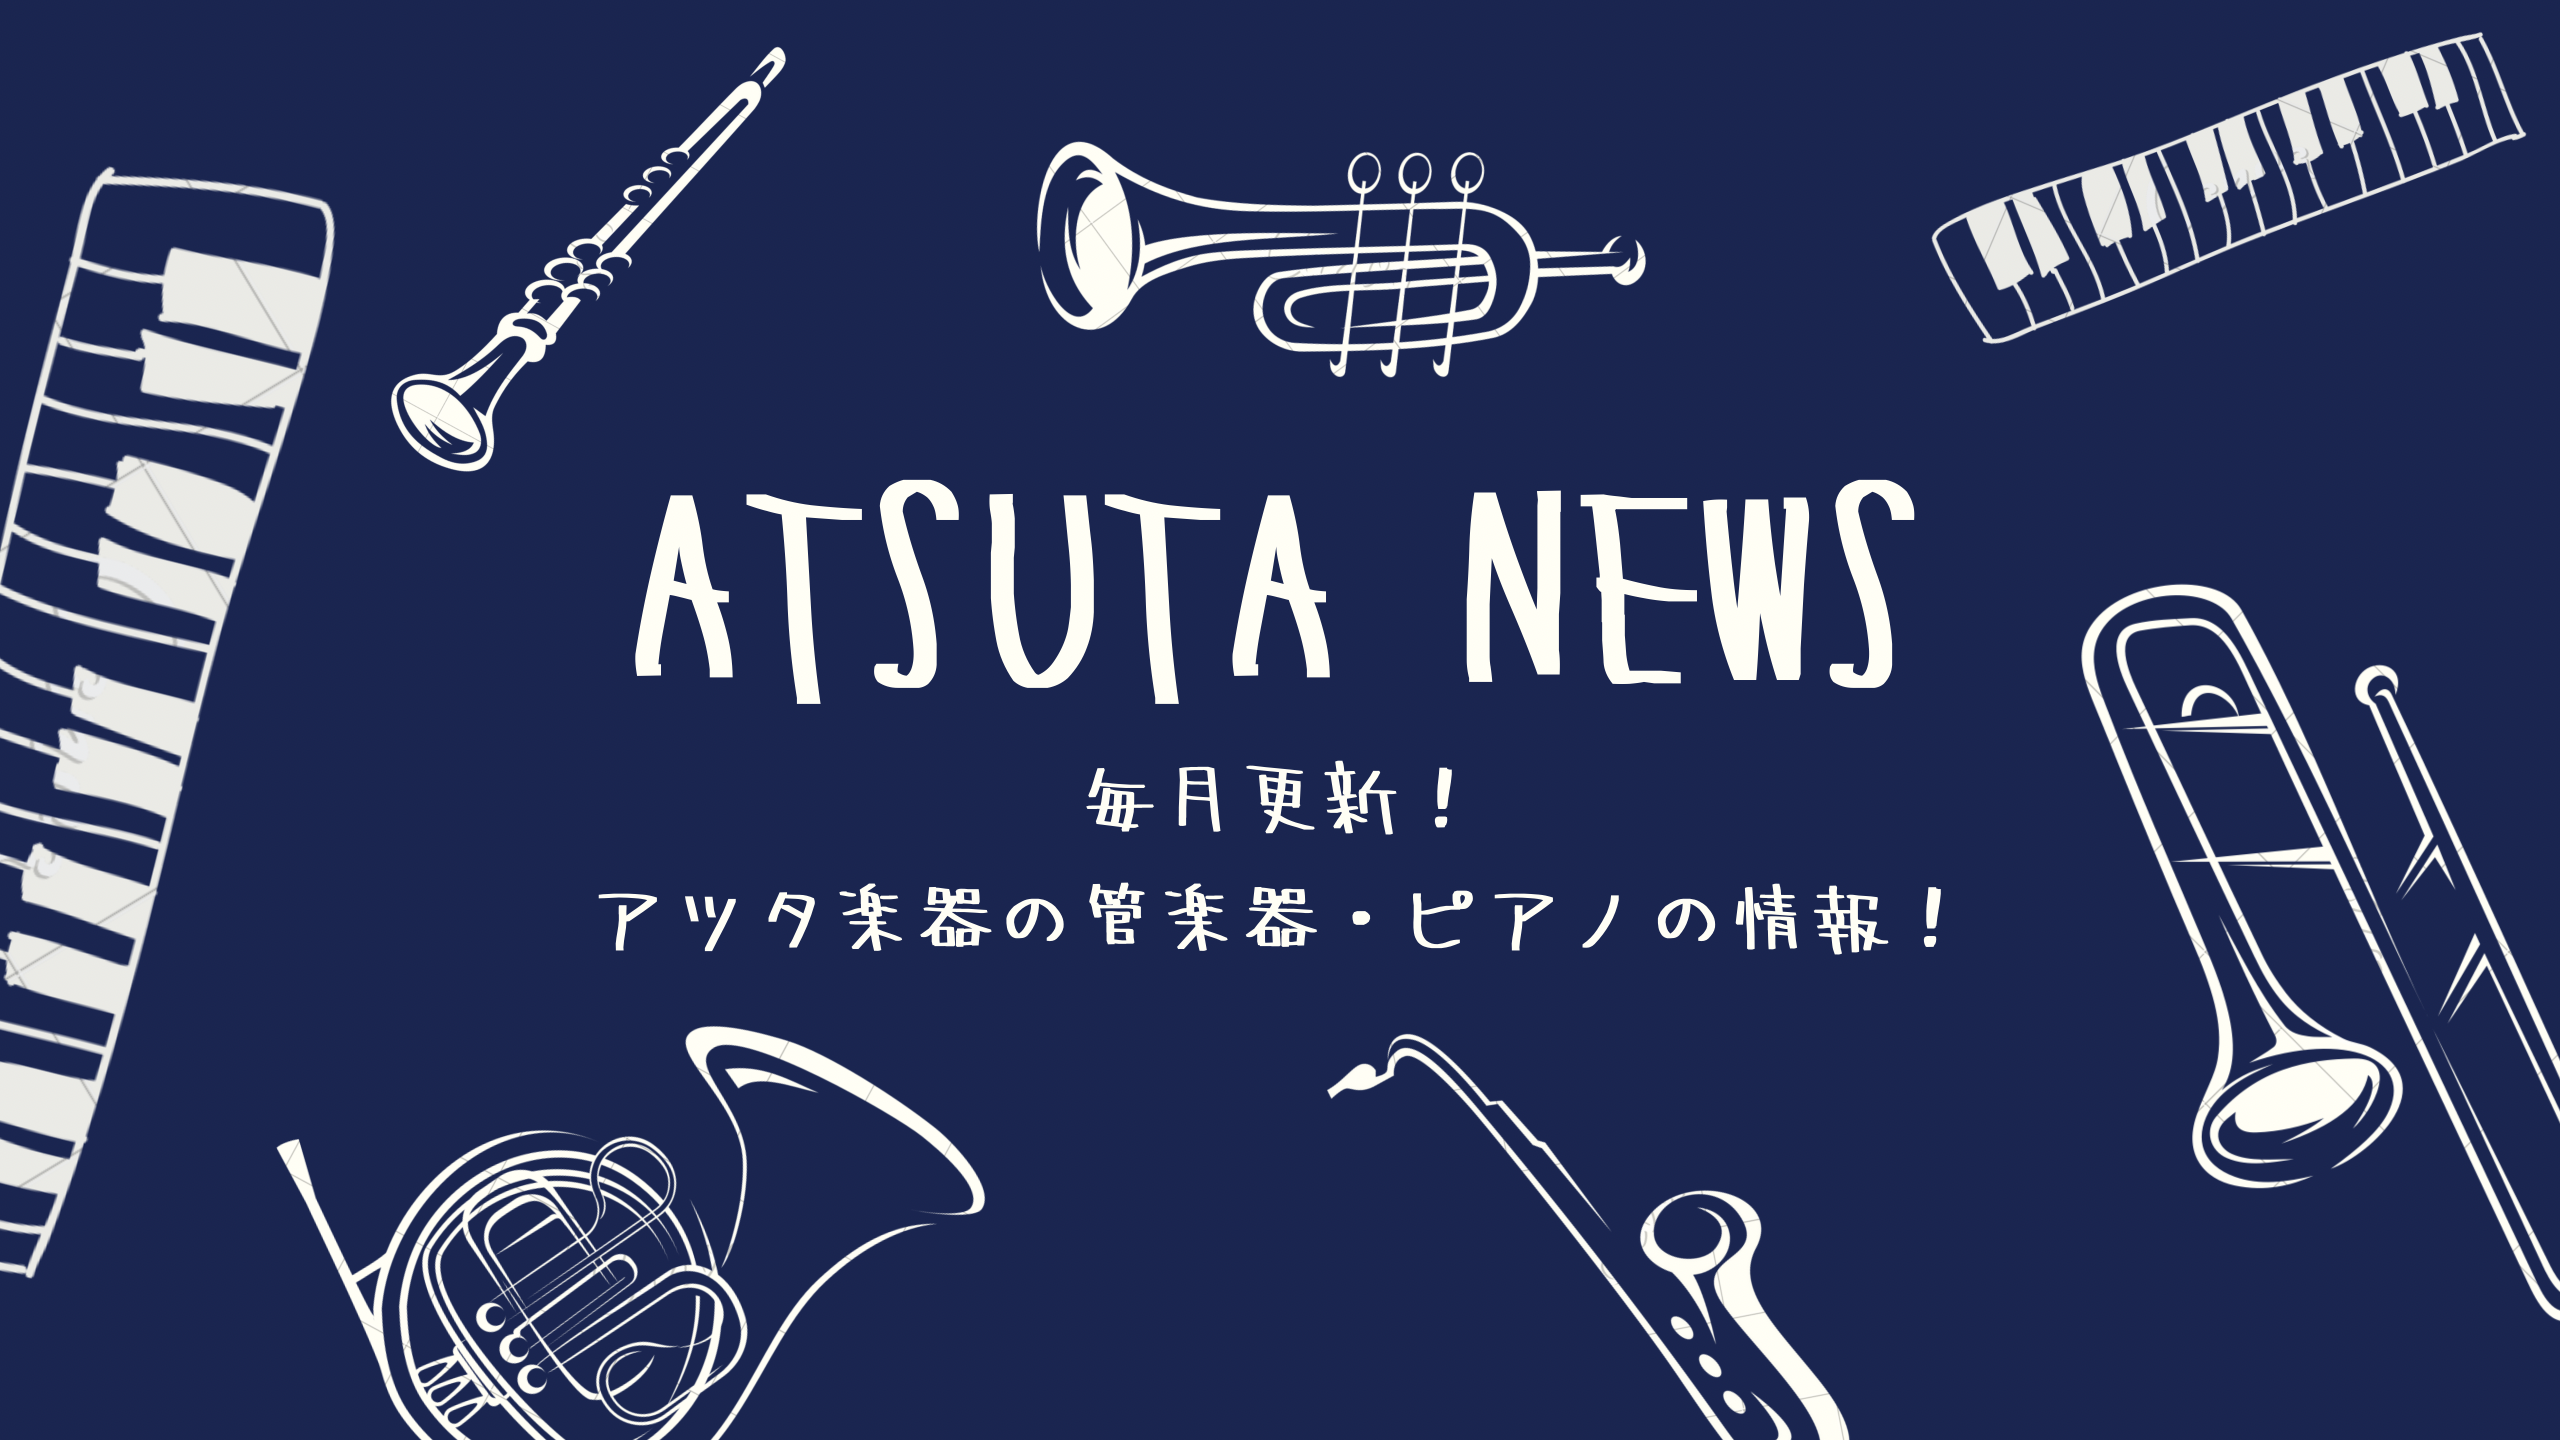 ATSUTA NEWS Vol.12